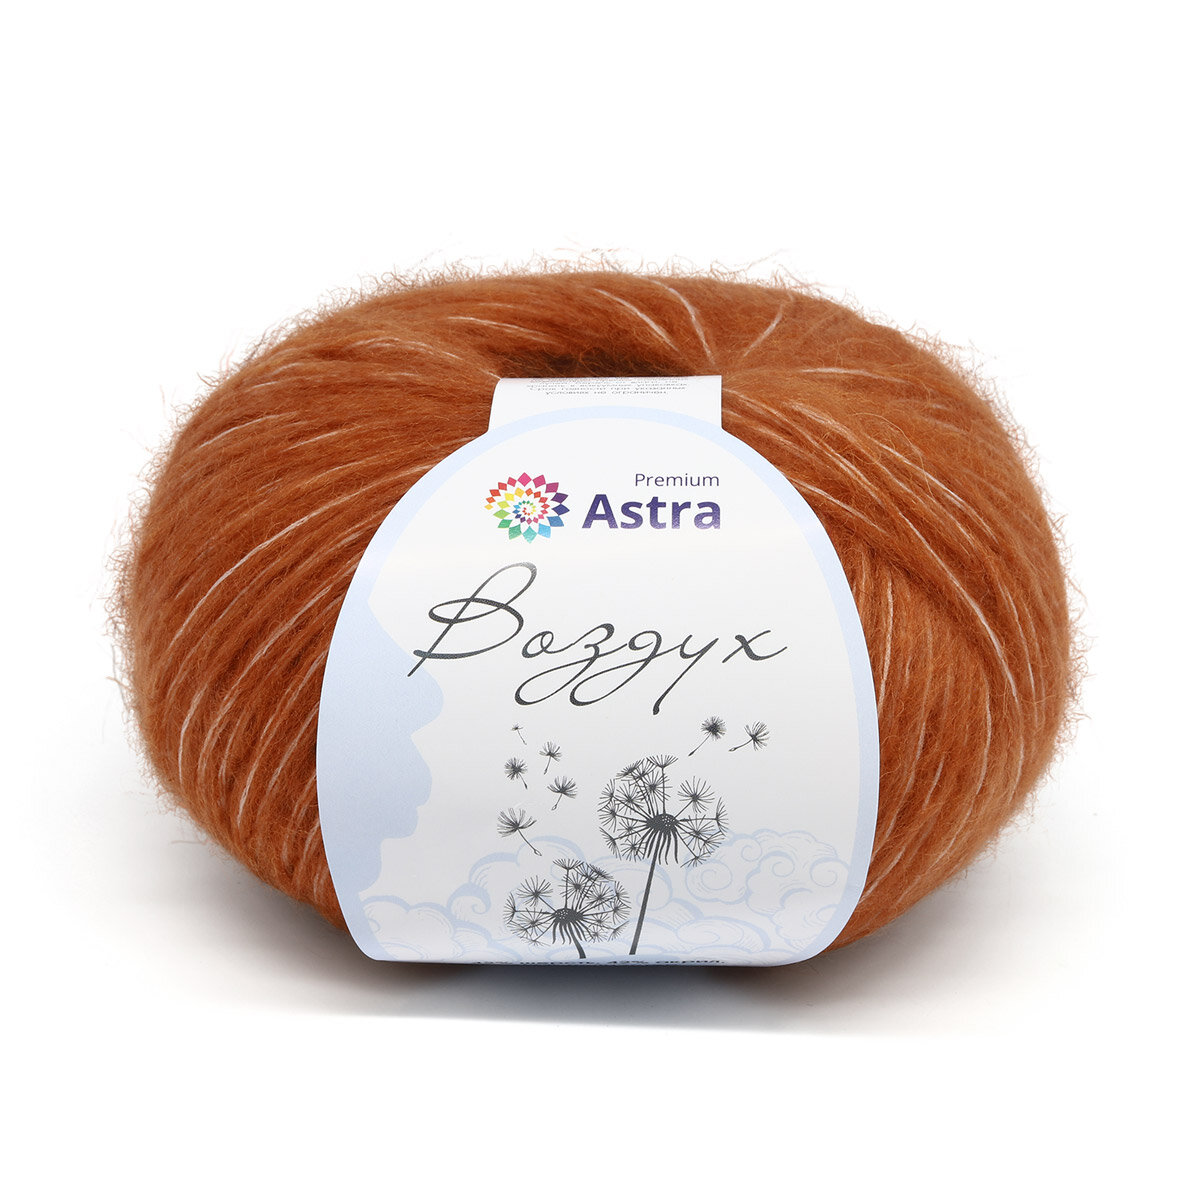 Пряжа для вязания Astra Premium 'Воздух' (Air), 50 г, 140 м (42% шерсть, 42% акрил, 16% полиэстер) (06 темно-оранжевый), 3 мотка